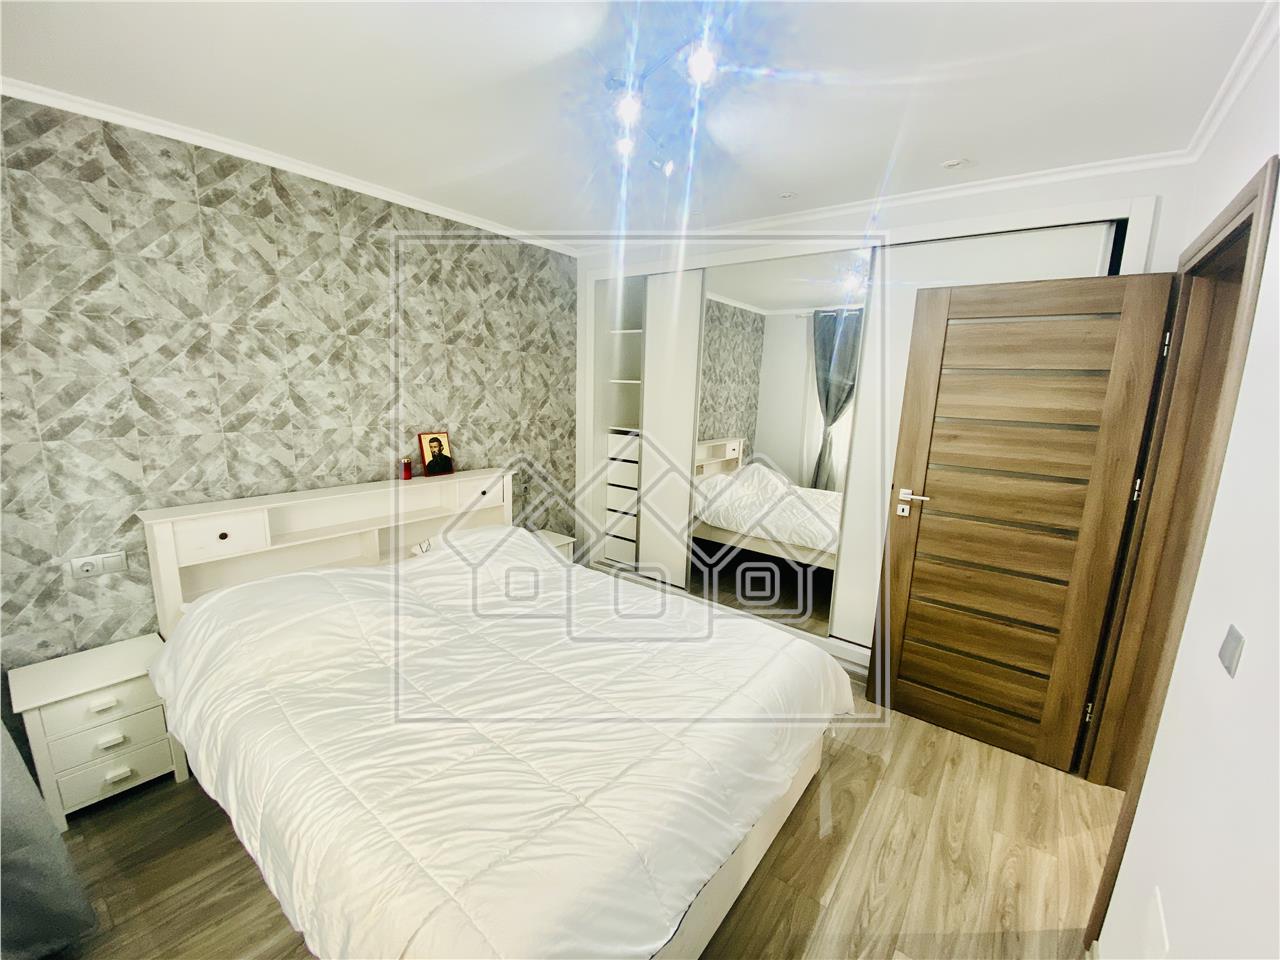 Wohnung zu verkaufen in Sibiu - 60 qm Nutzflache und 84 qm Garten - Se